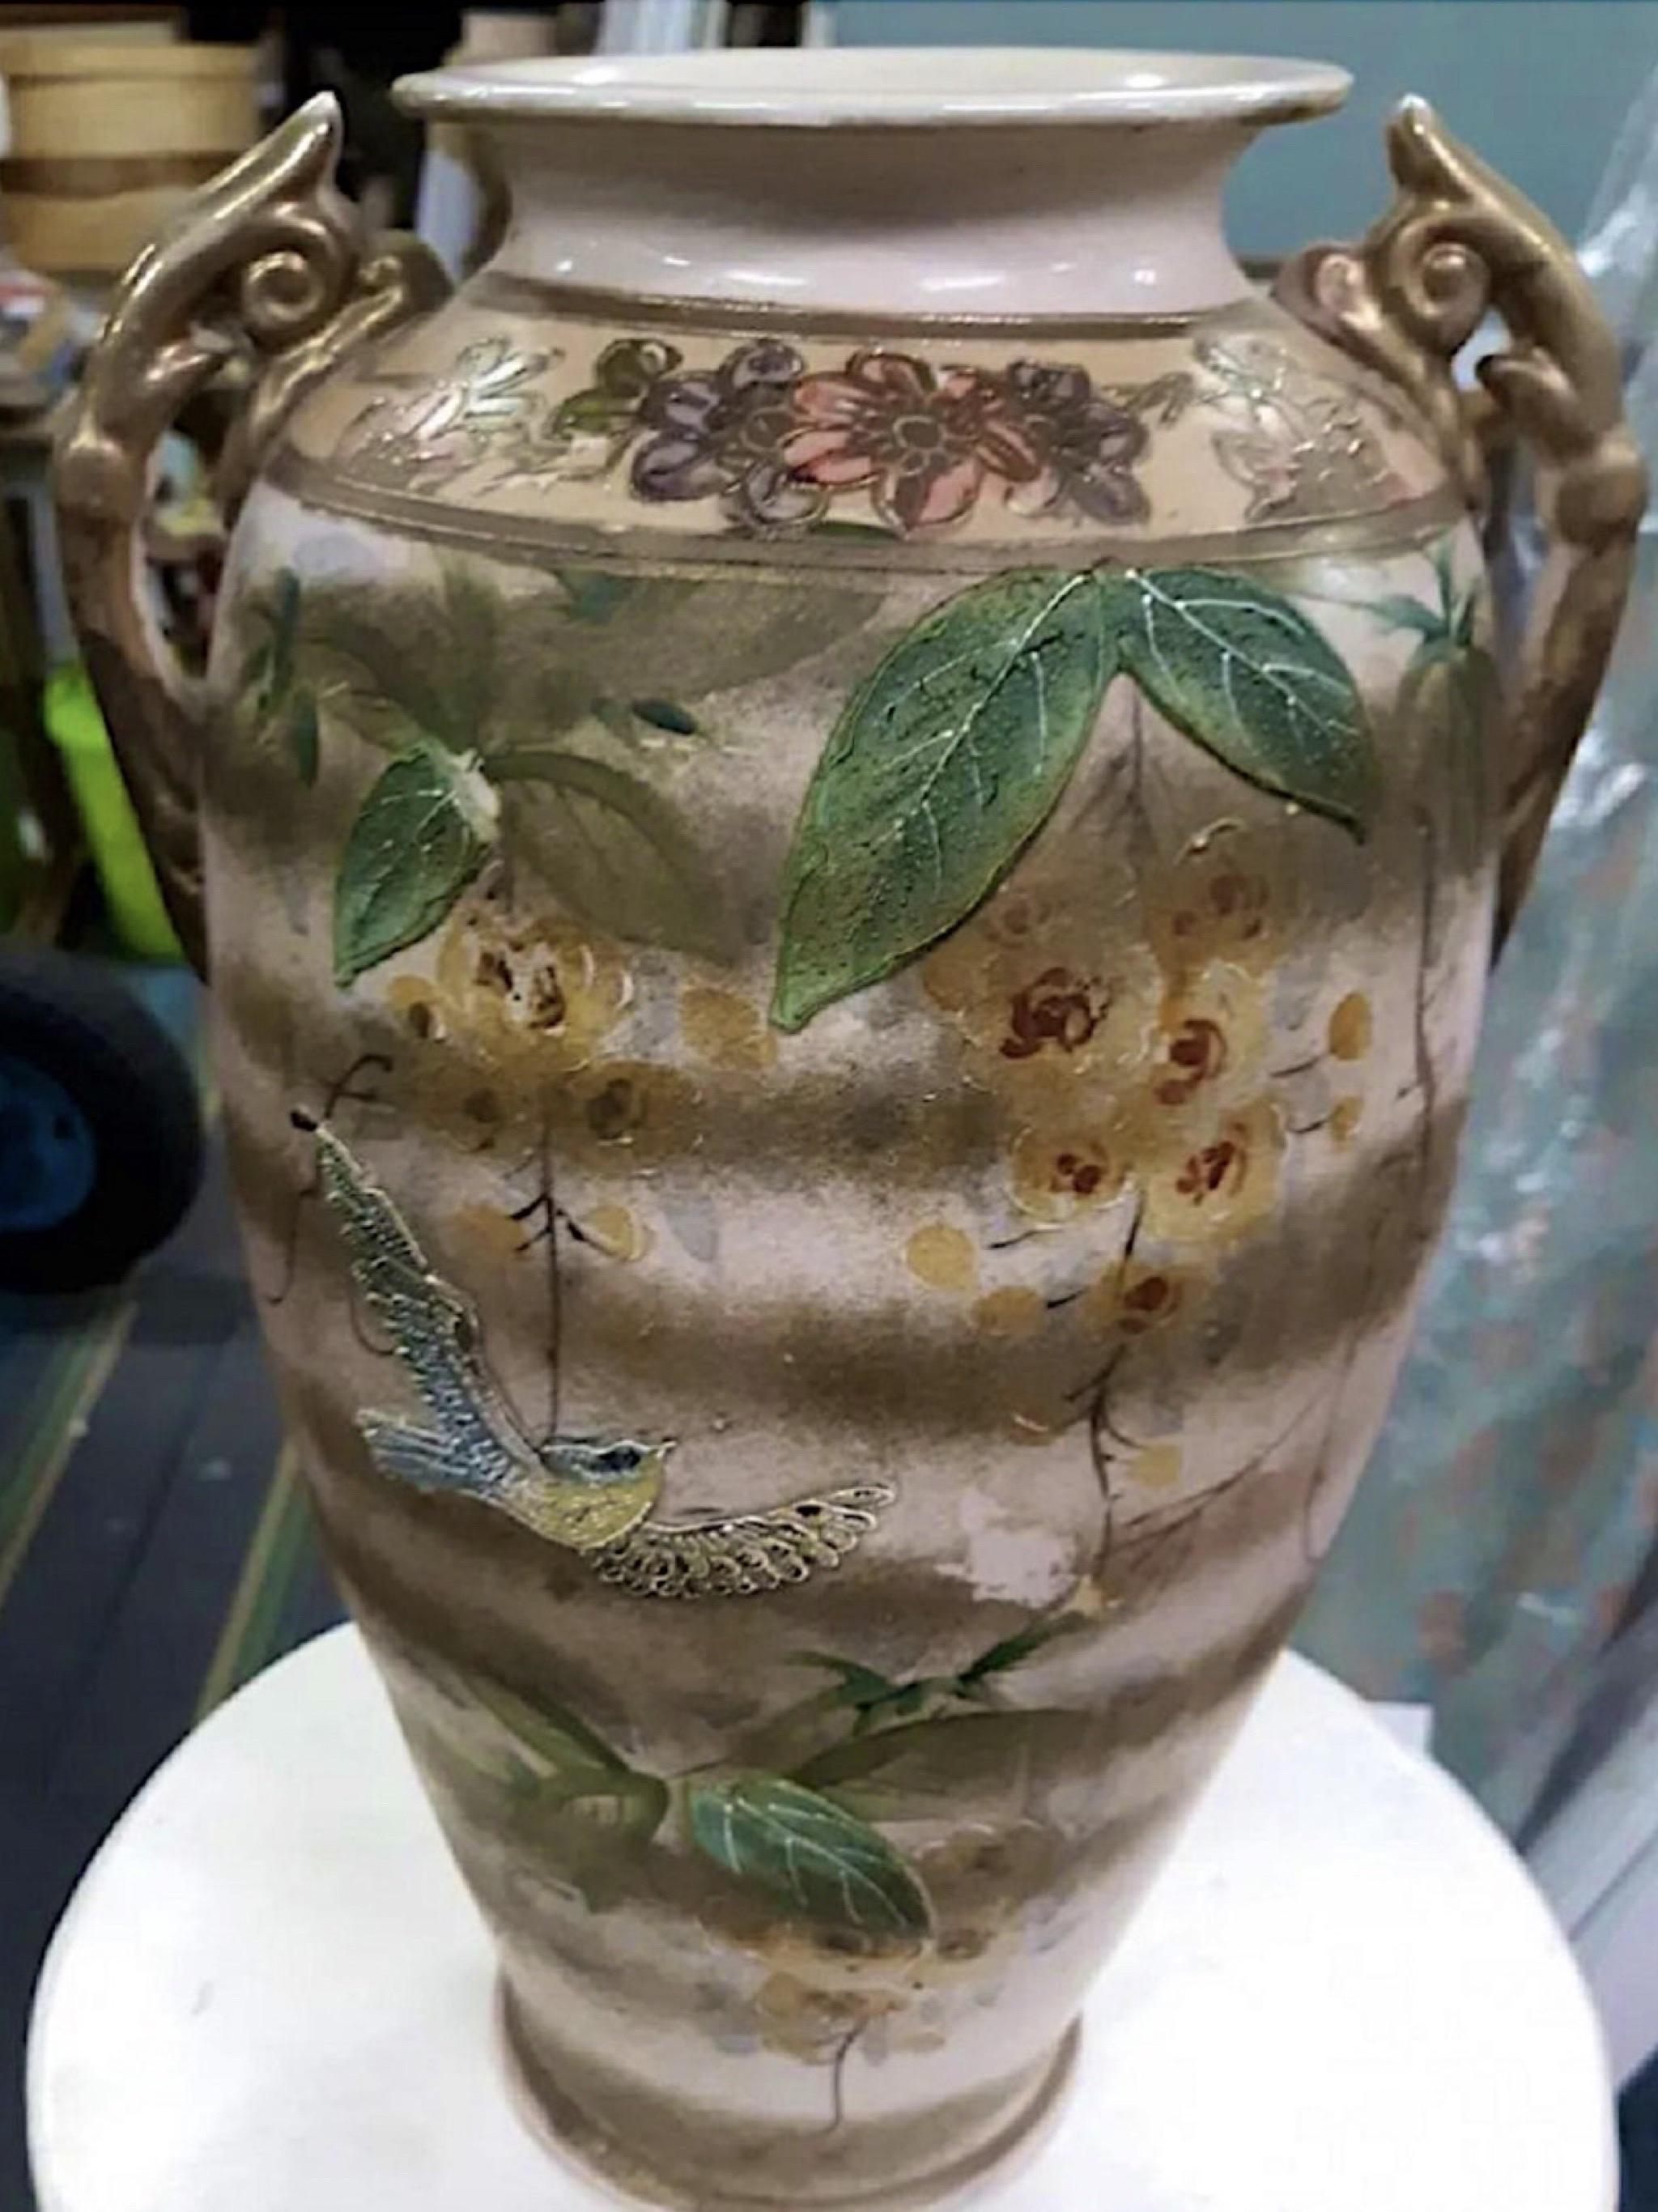 Wilmington Nc estate sale find. Une pièce rare et exceptionnelle de poterie du 19ème siècle tournée à la main. Vase à décor de moriage d'hirondelles et de fleurs. Il y a une petite perte de la décoration de la fleur et un craquement général dû à